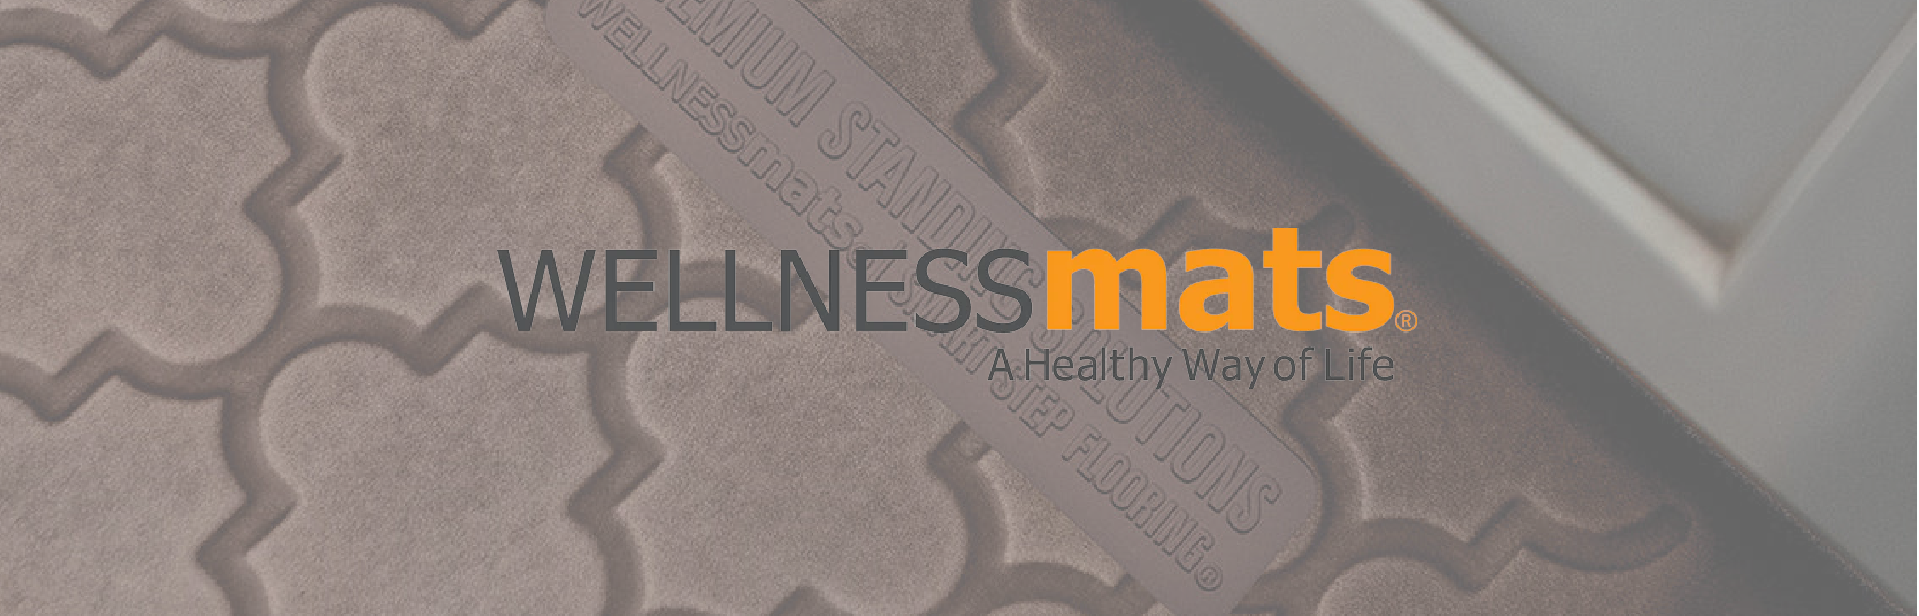 Wellness Mats